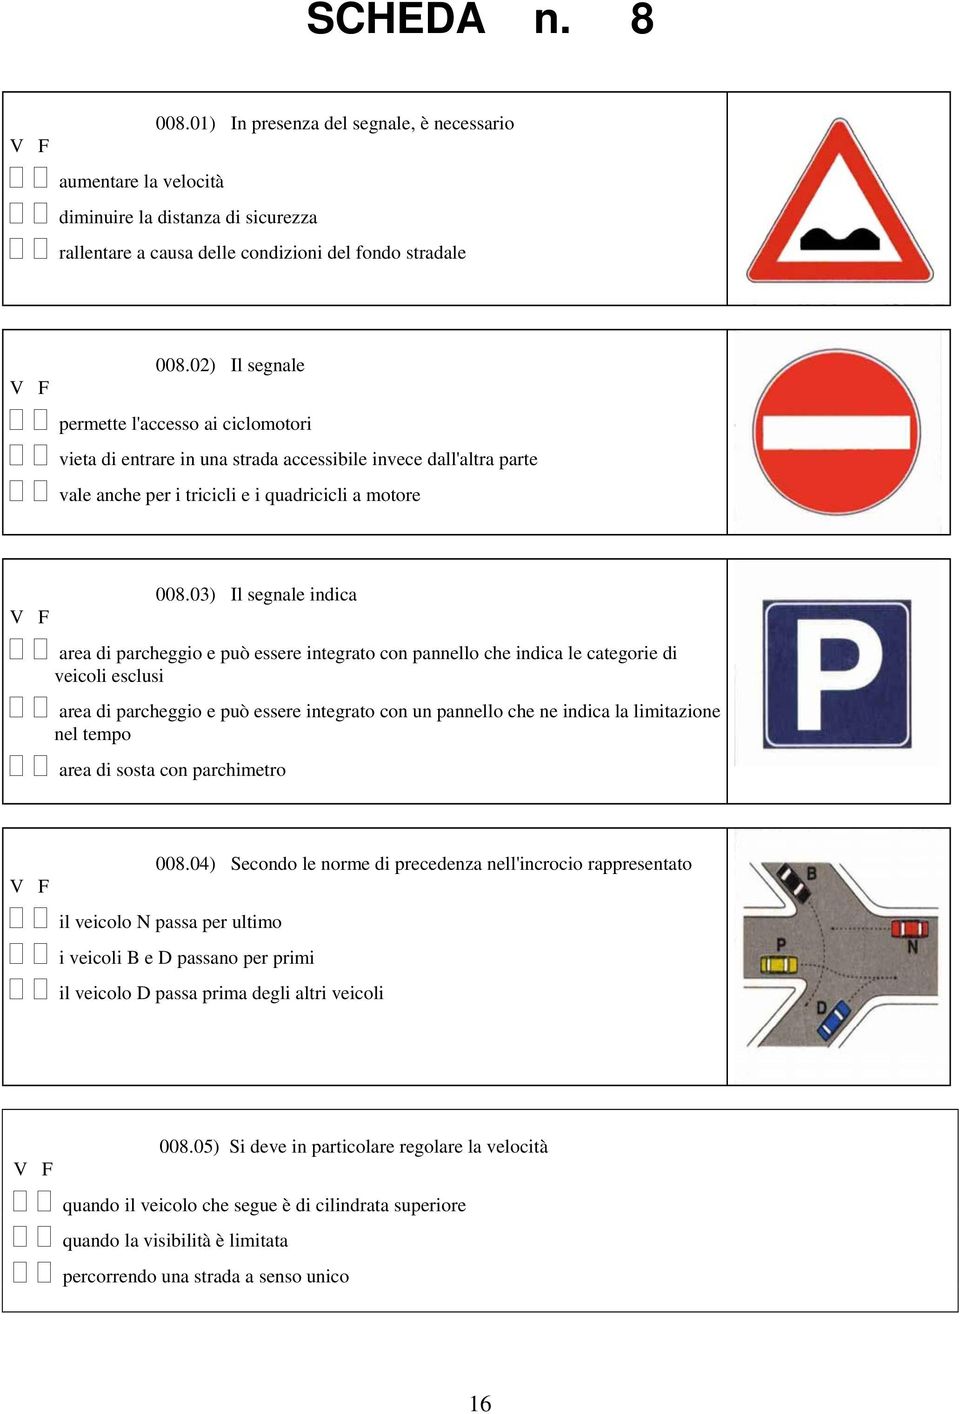 03) Il segnale indica area di parcheggio e può essere integrato con pannello che indica le categorie di veicoli esclusi area di parcheggio e può essere integrato con un pannello che ne indica la